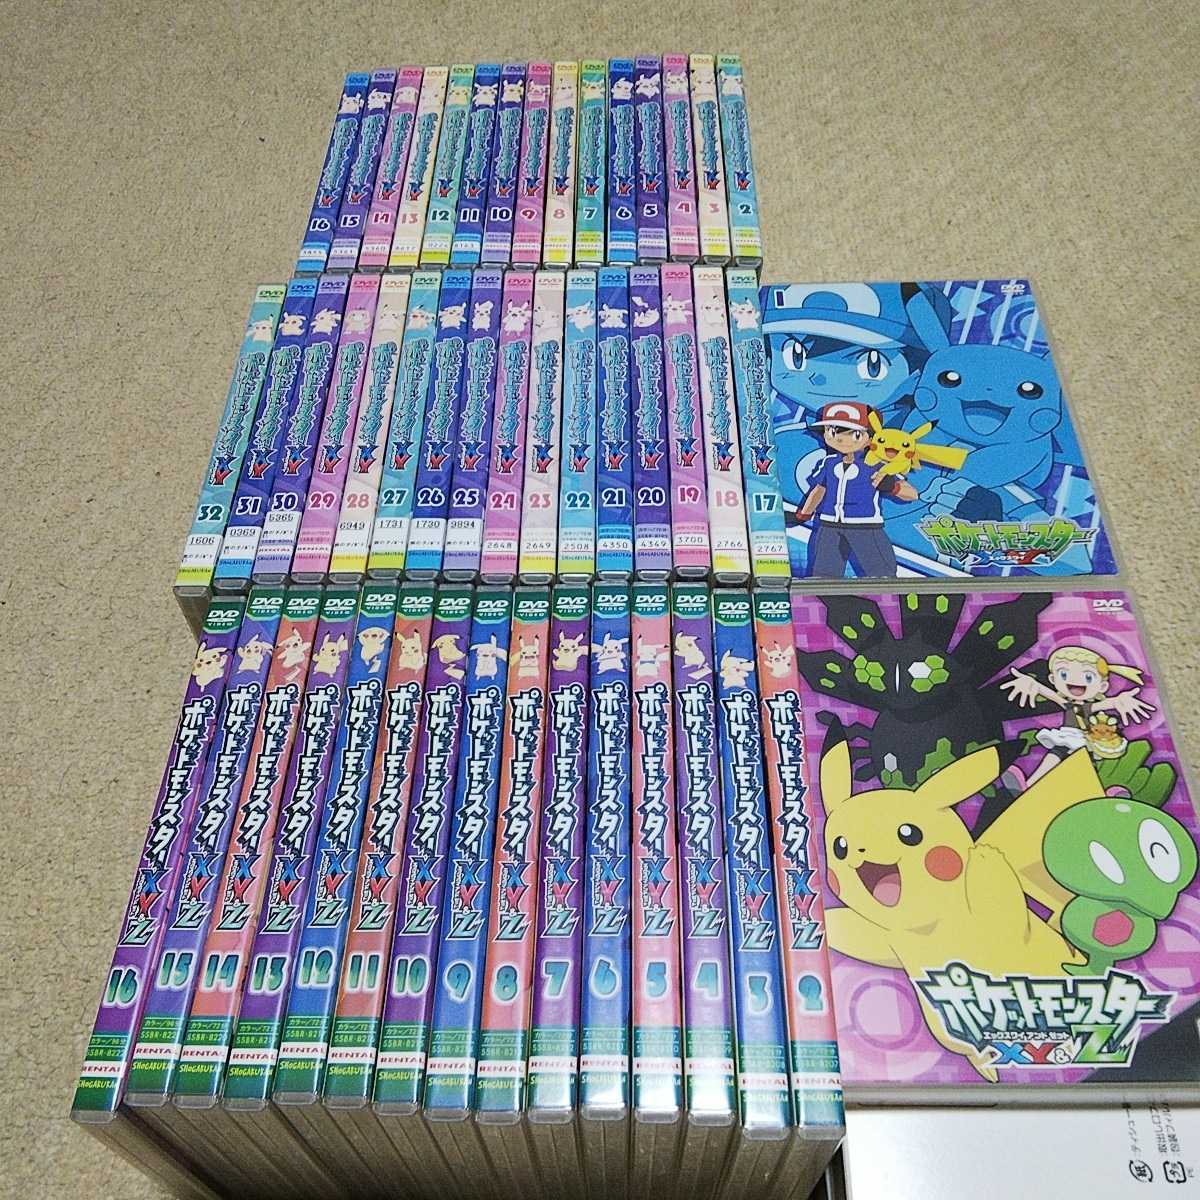 ポケットモンスター XY &Z DVD 全16巻 全巻セット 新品で購入 www 